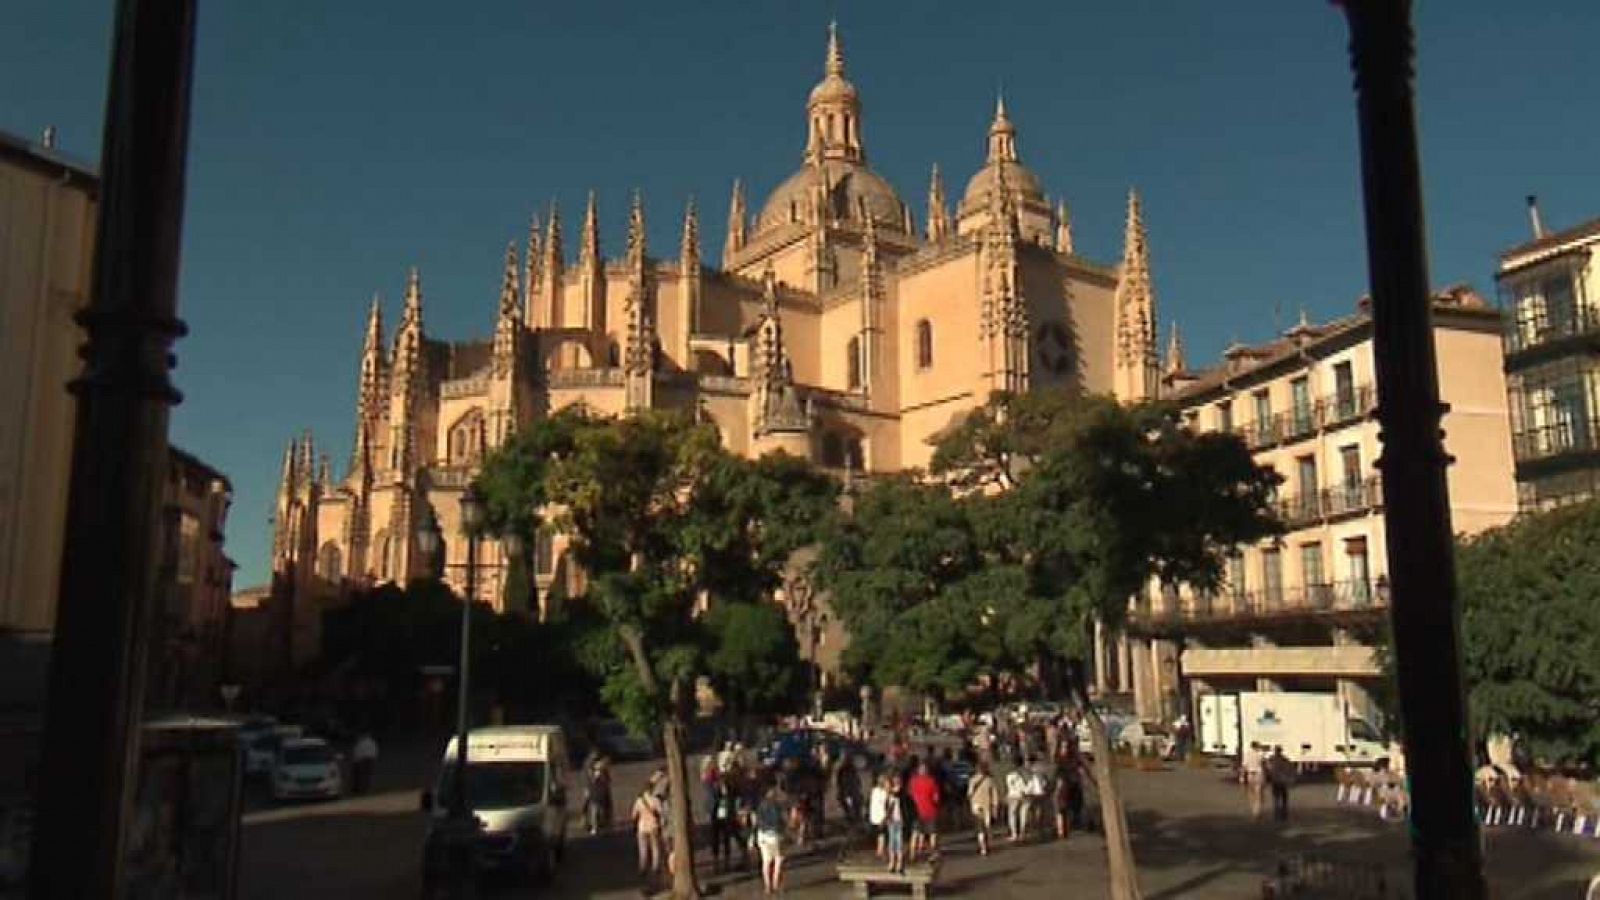 El día del Señor - Catedral de Segovia